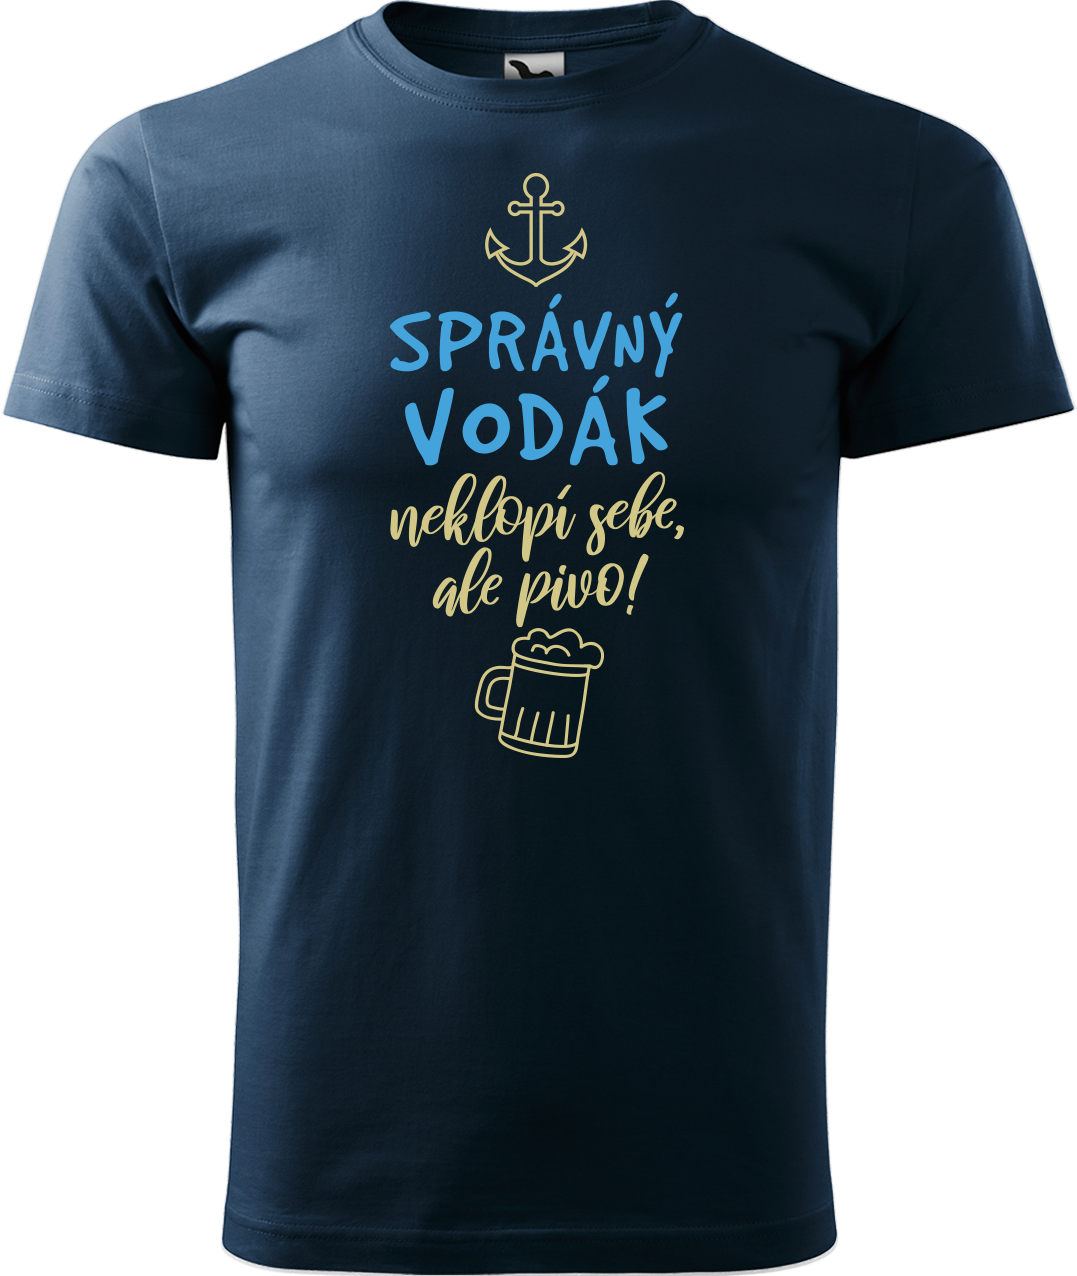 Pánské vodácké tričko - Správný vodák Velikost: 4XL, Barva: Námořní modrá (02)